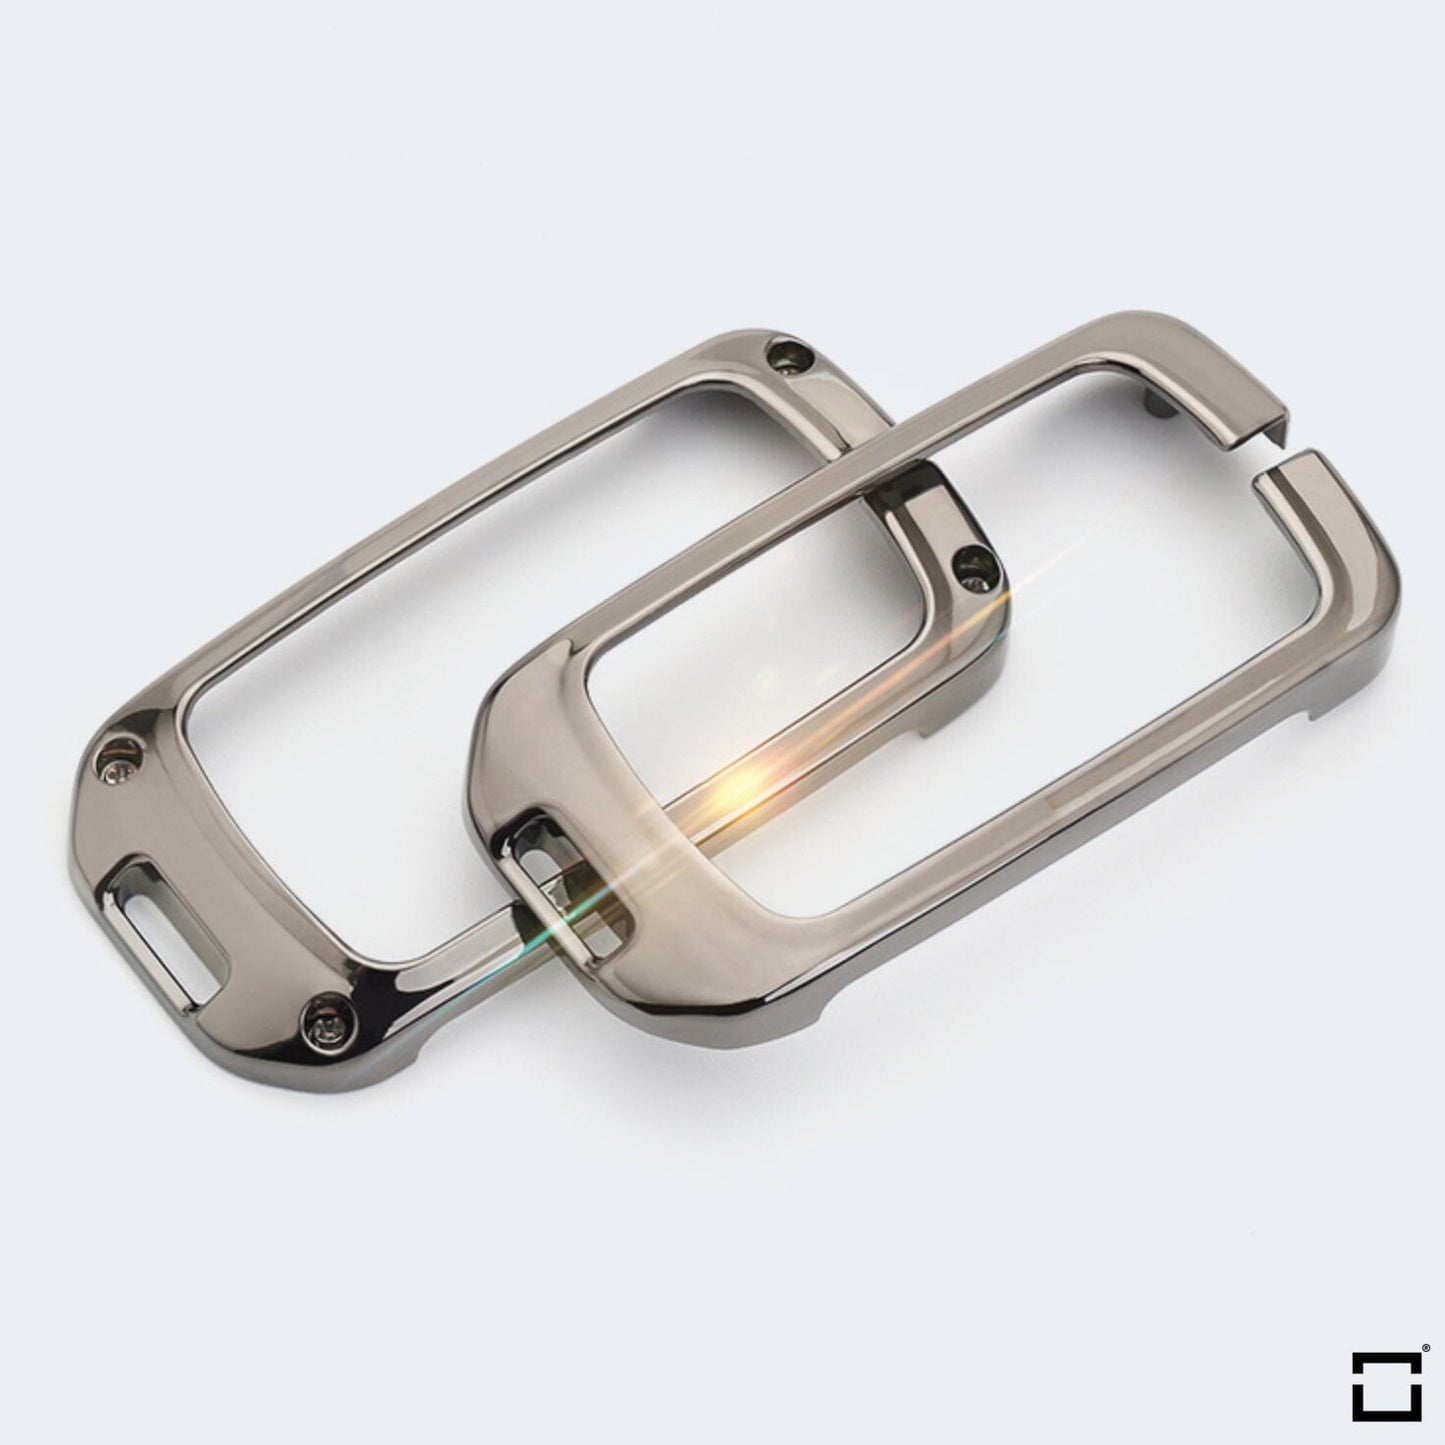 Schlüssel Cover mit Silikon Tastenabdeckung (Leuchtend) passend für Honda Autoschlüssel HEK54-H10-S114 keyholster.com | the case company 